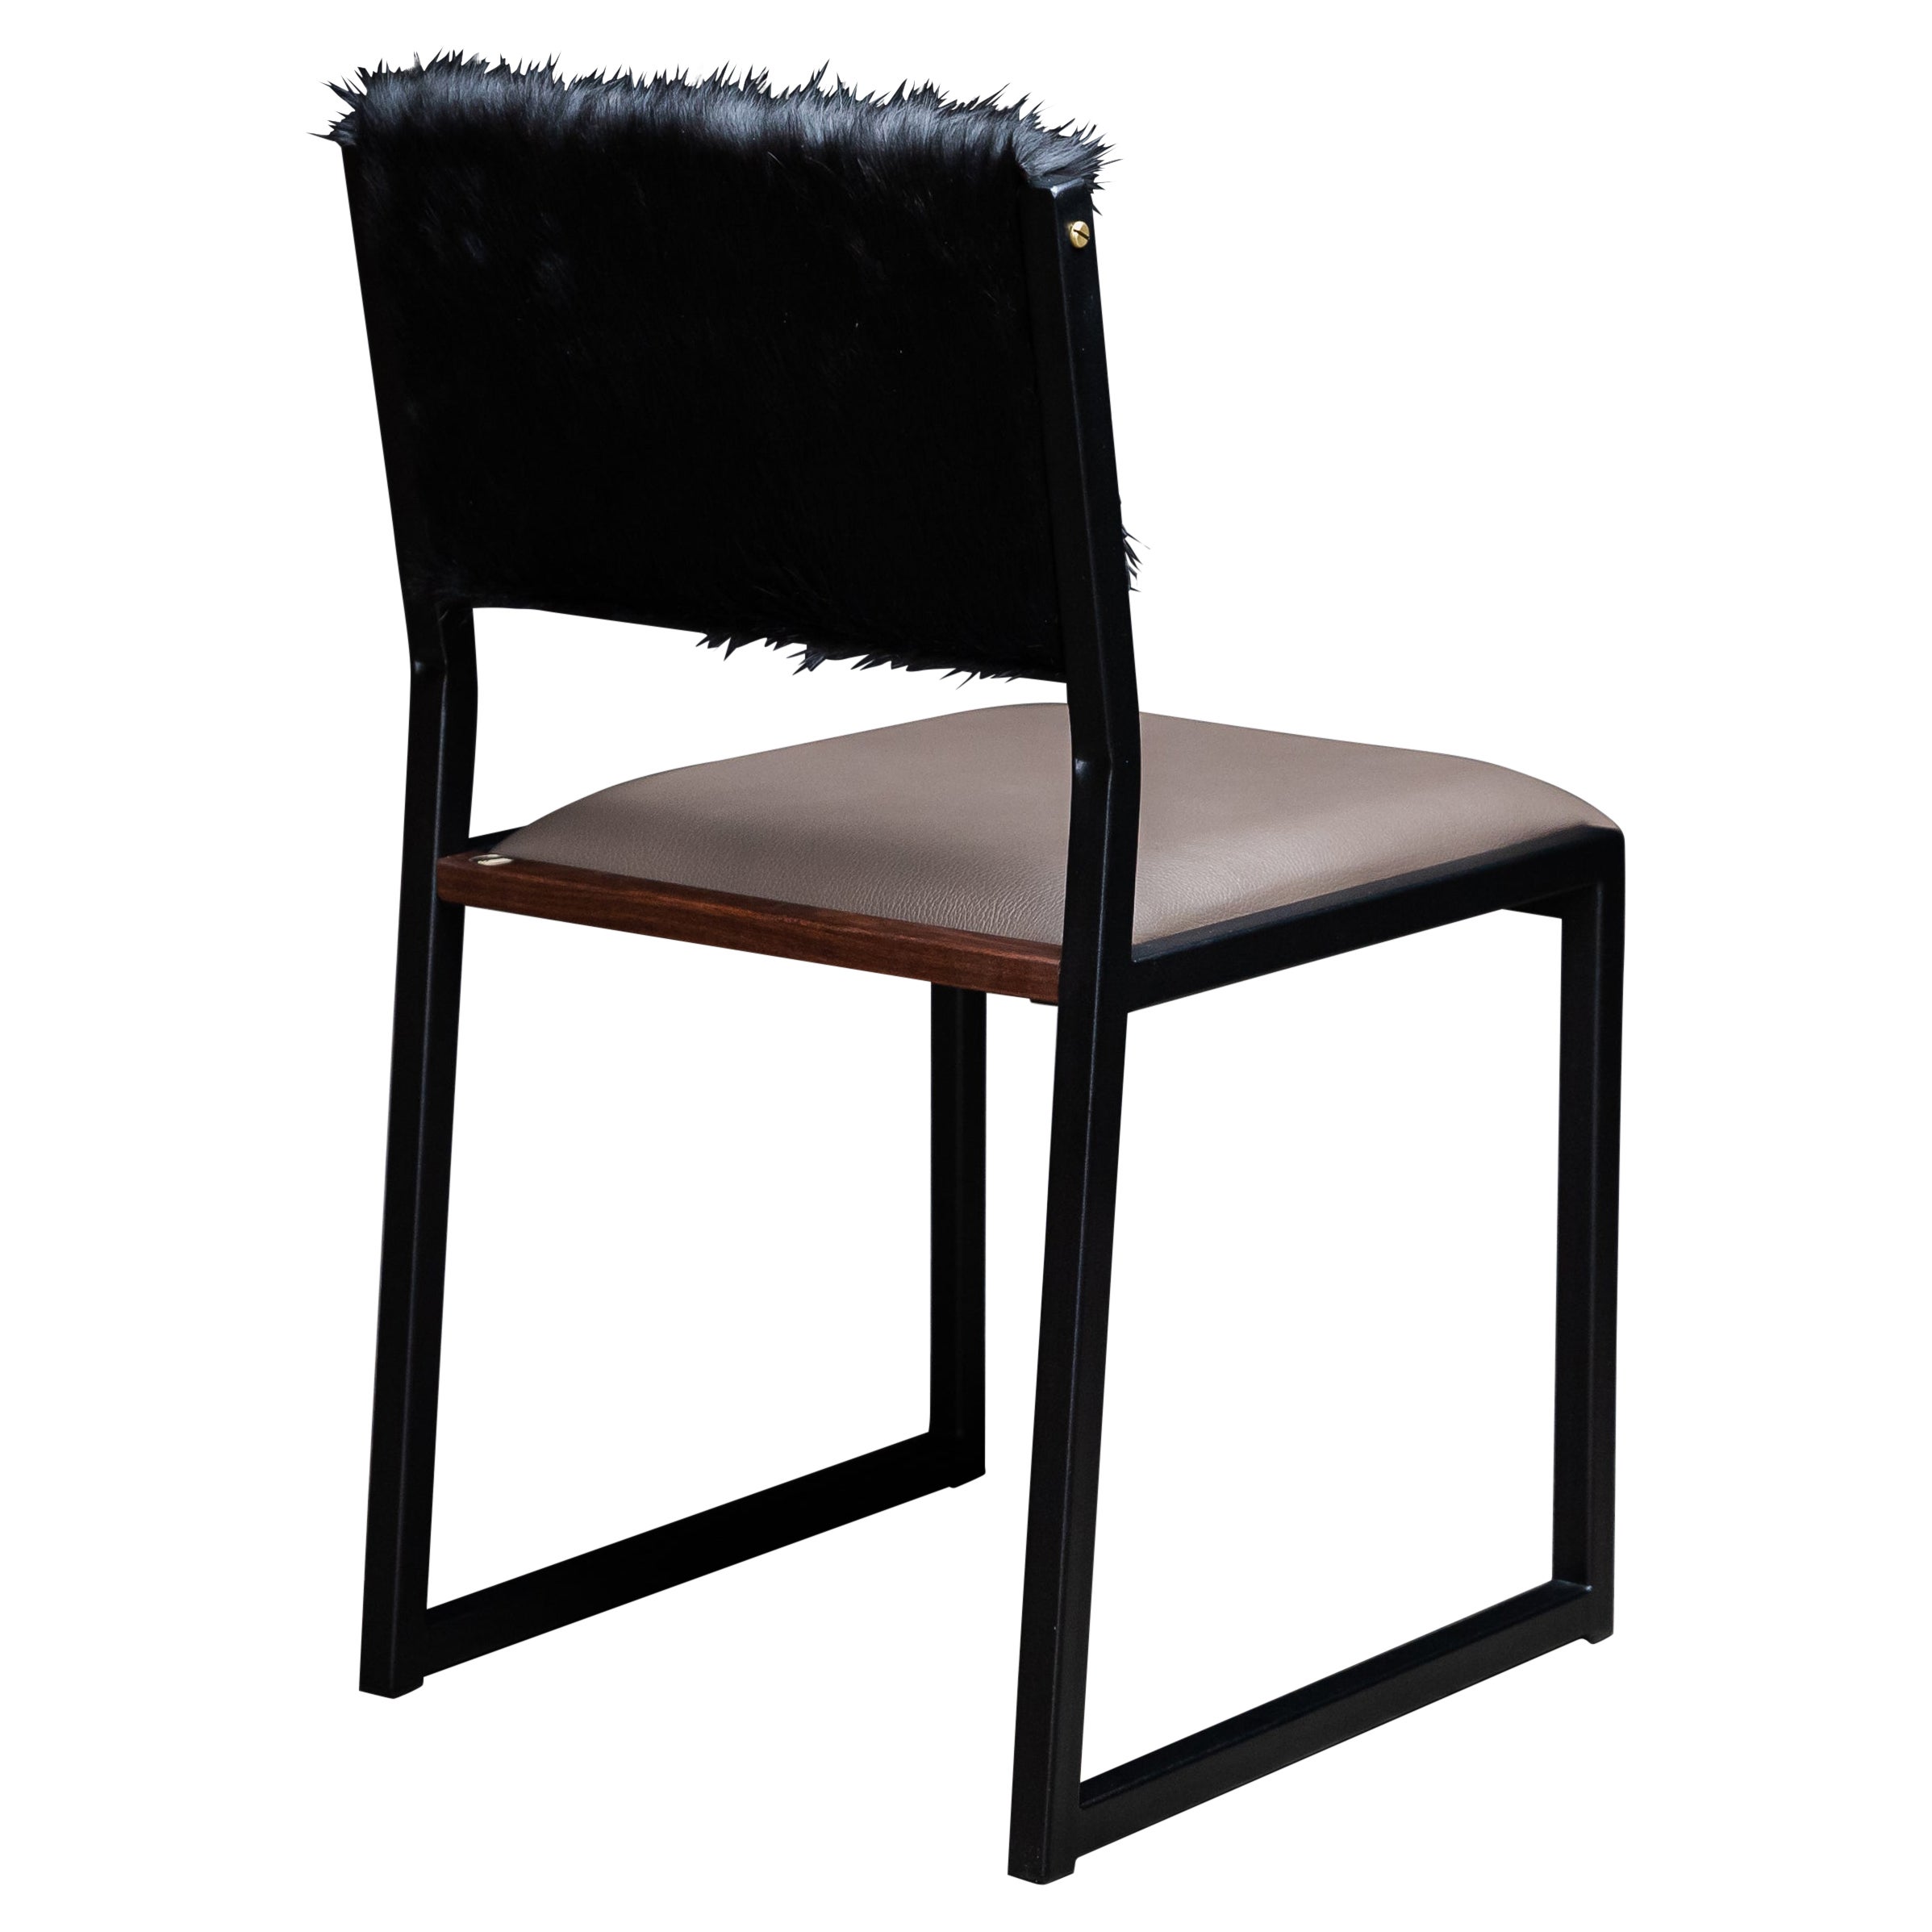 Shaker Moderner Stuhl von Ambrozia, Nussbaum, Rauchleder, schwarzes Rindsleder